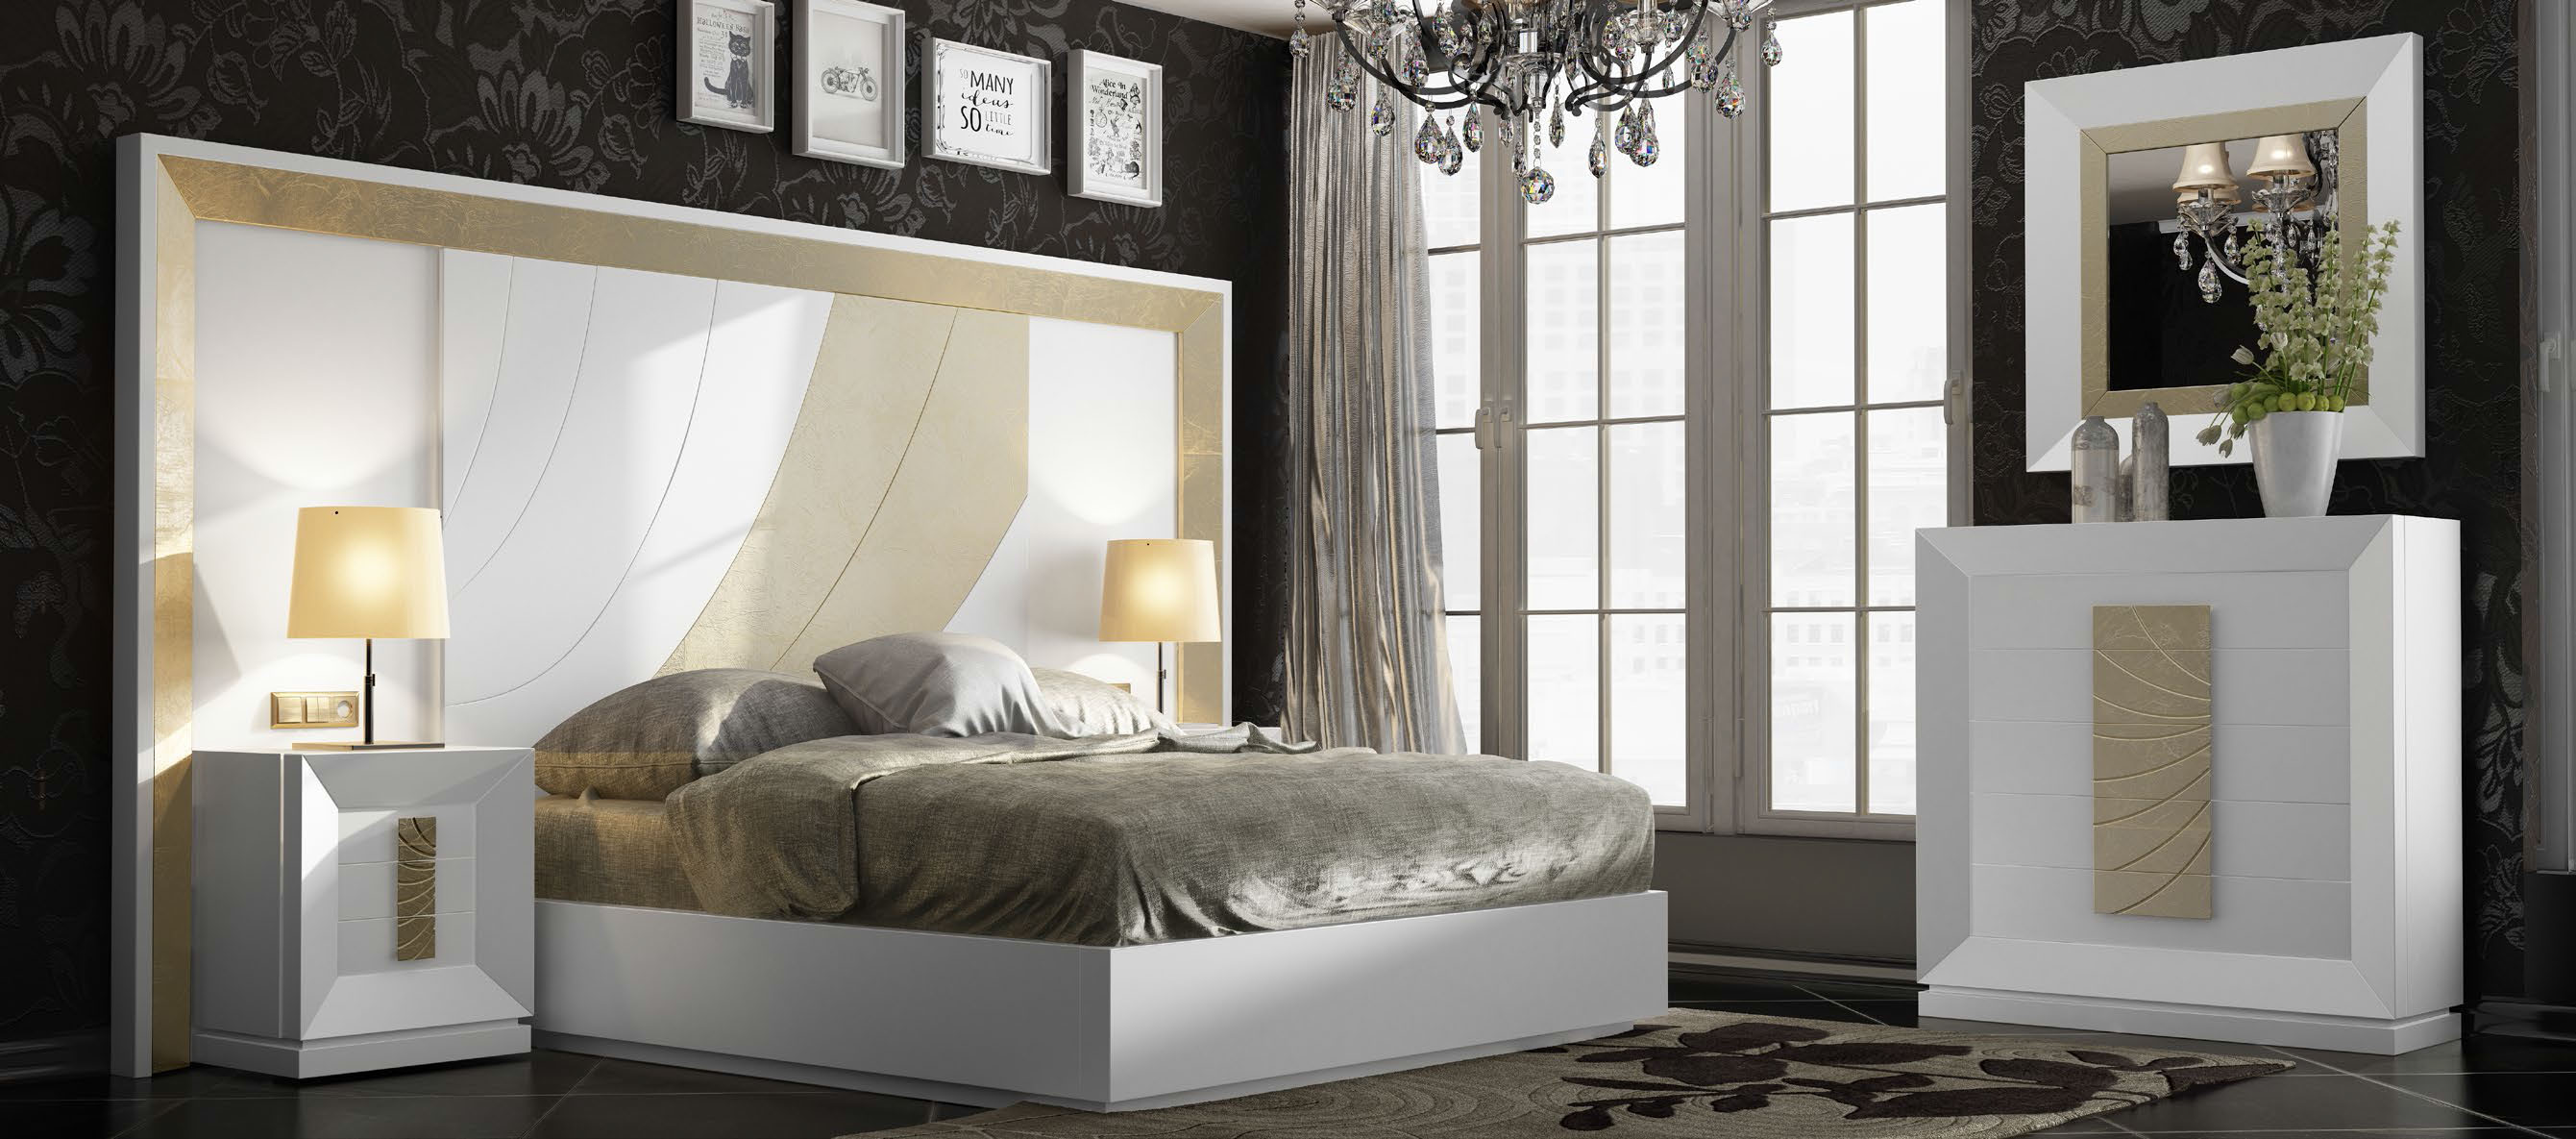 Brands Franco Furniture Avanty Bedrooms, Spain DOR 130